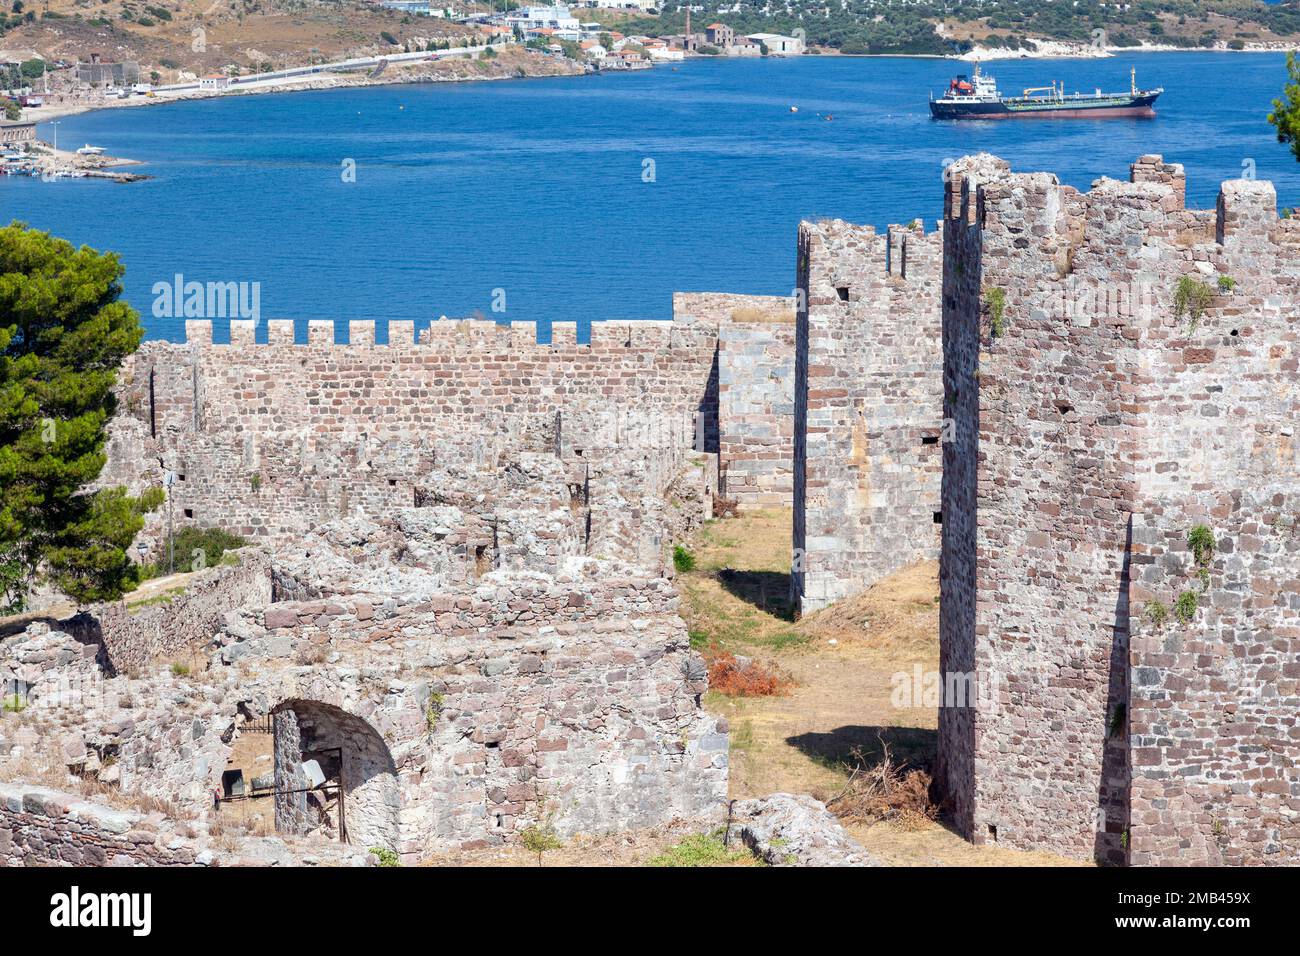 Vista parziale del castello medievale di Mytilene, sull'isola di Lesvos, Grecia, Europa. Il forte fu costruito in epoca bizantina (su resti più antichi) Foto Stock